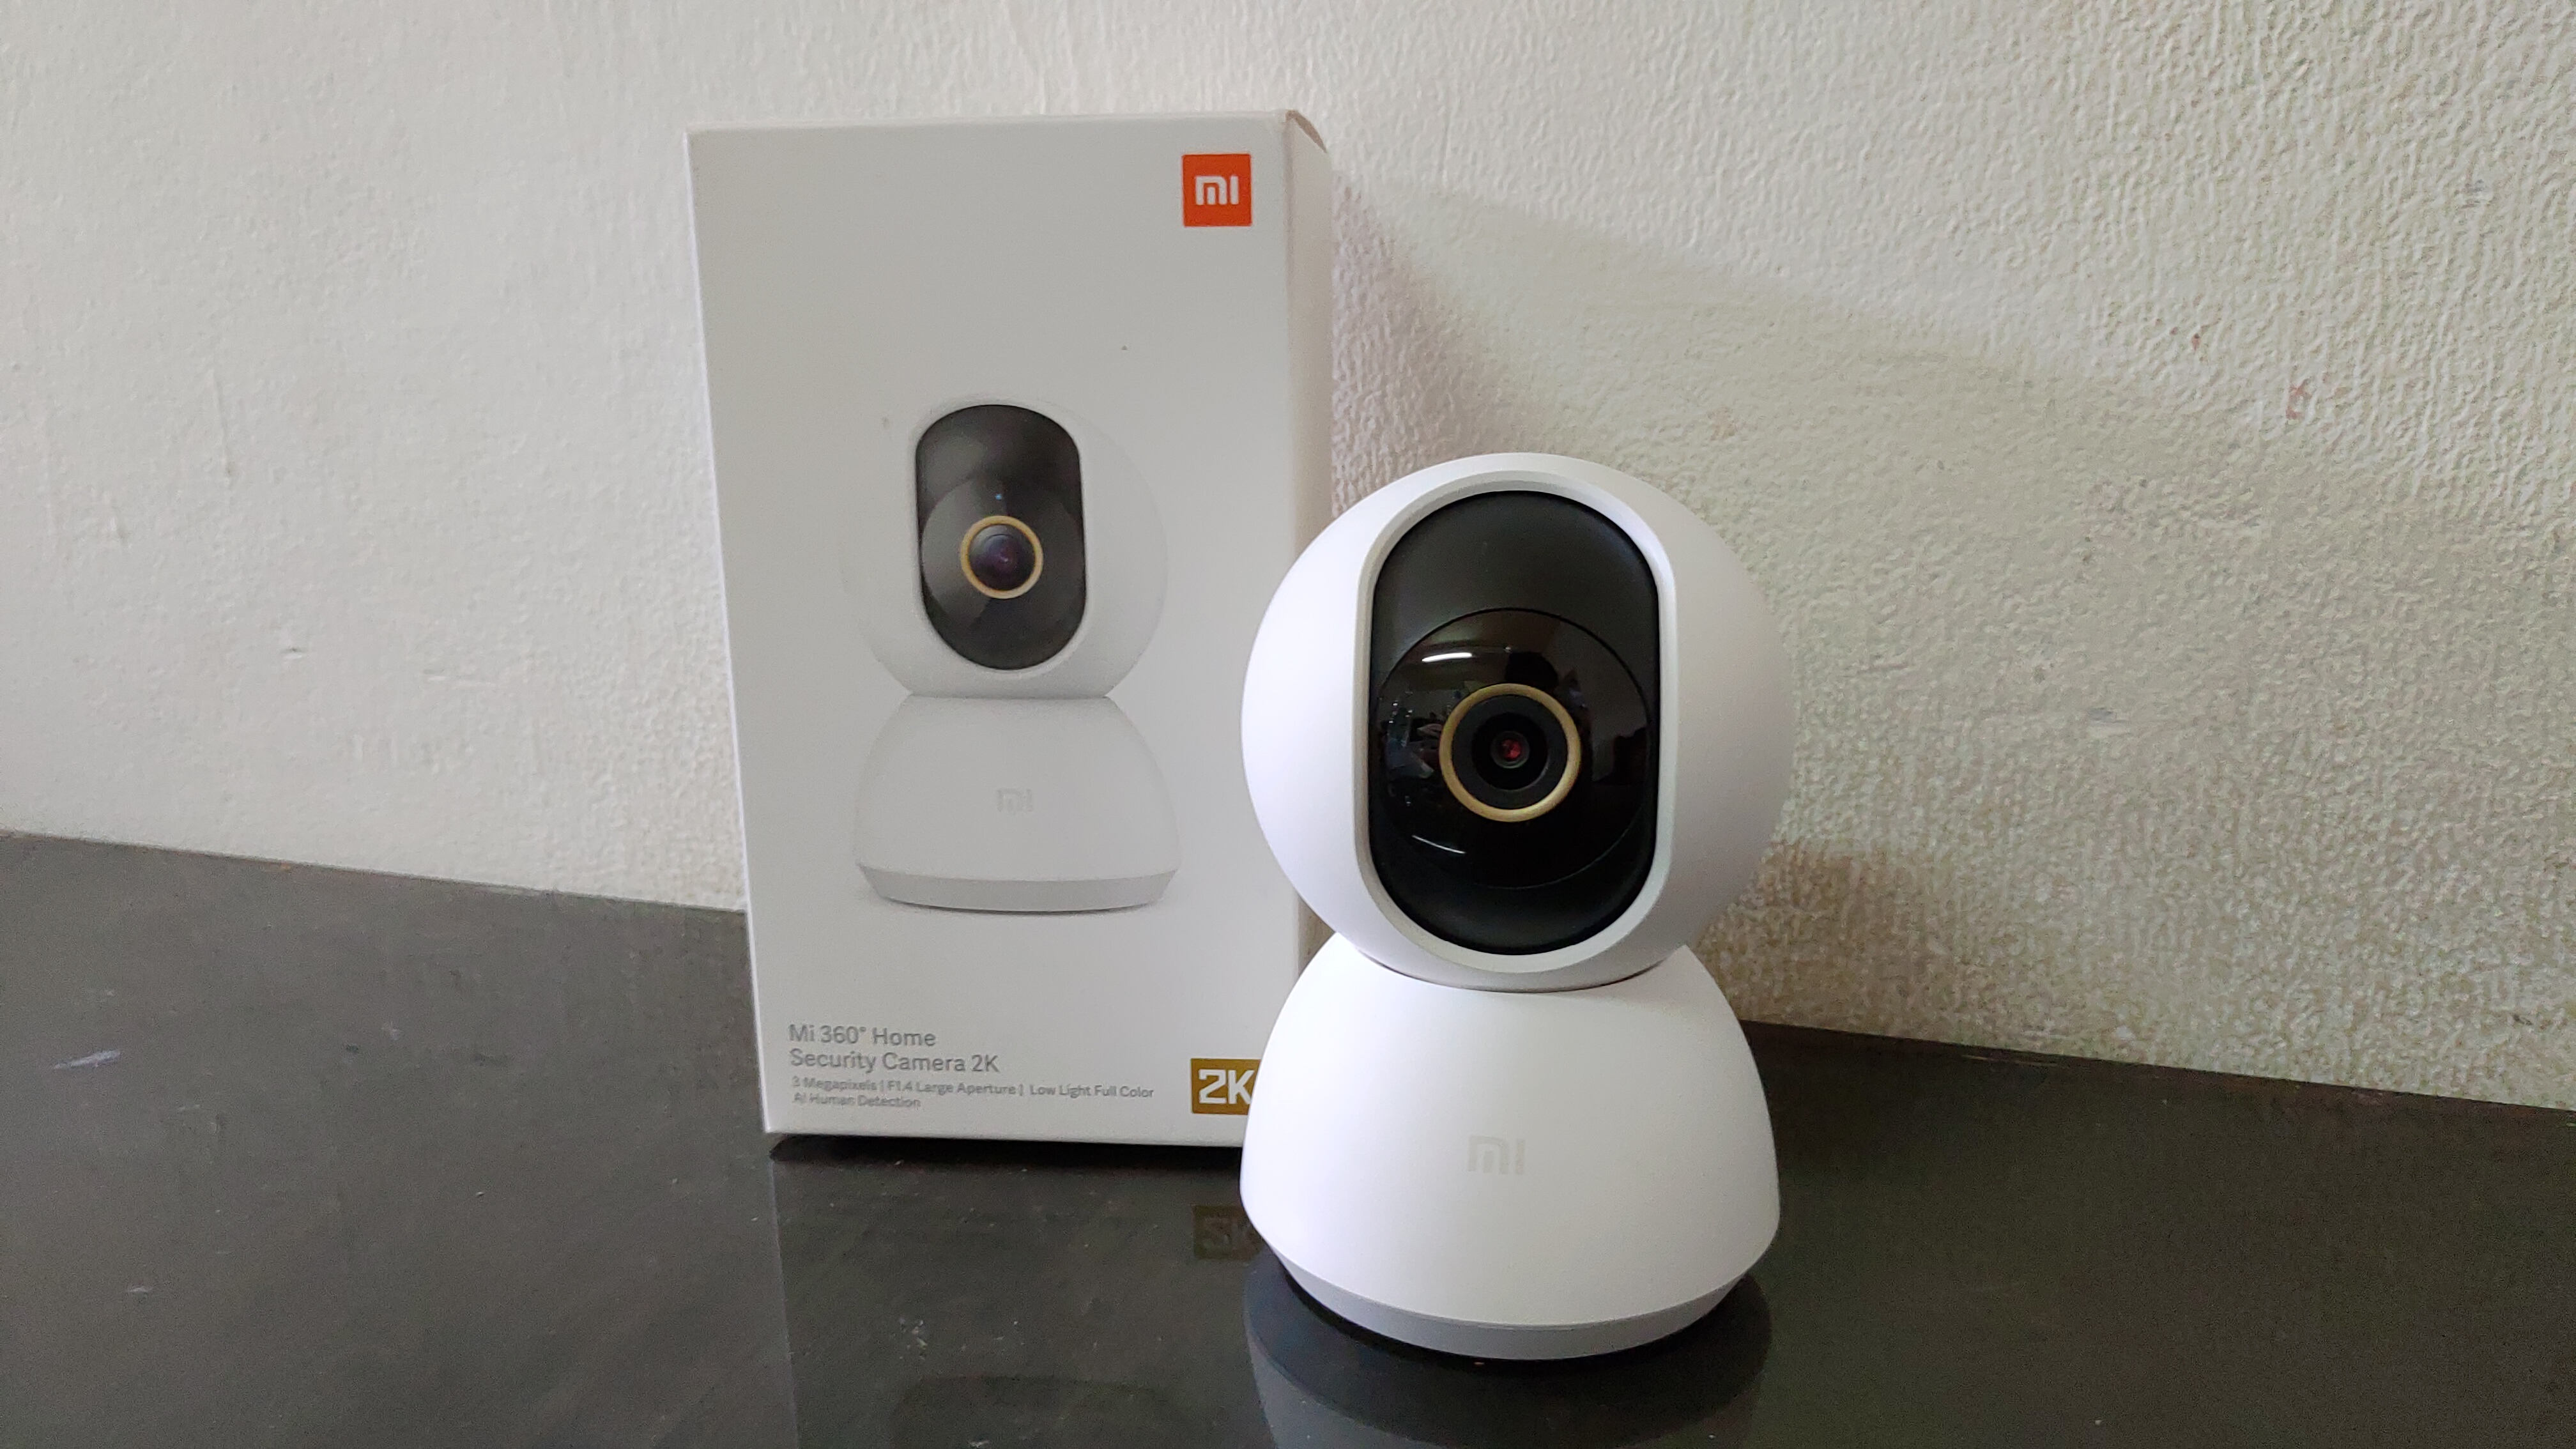 Review Xiaomi Mi 360° Home Security Camera 2K: Kamera Keamanan dengan Fitur Premium